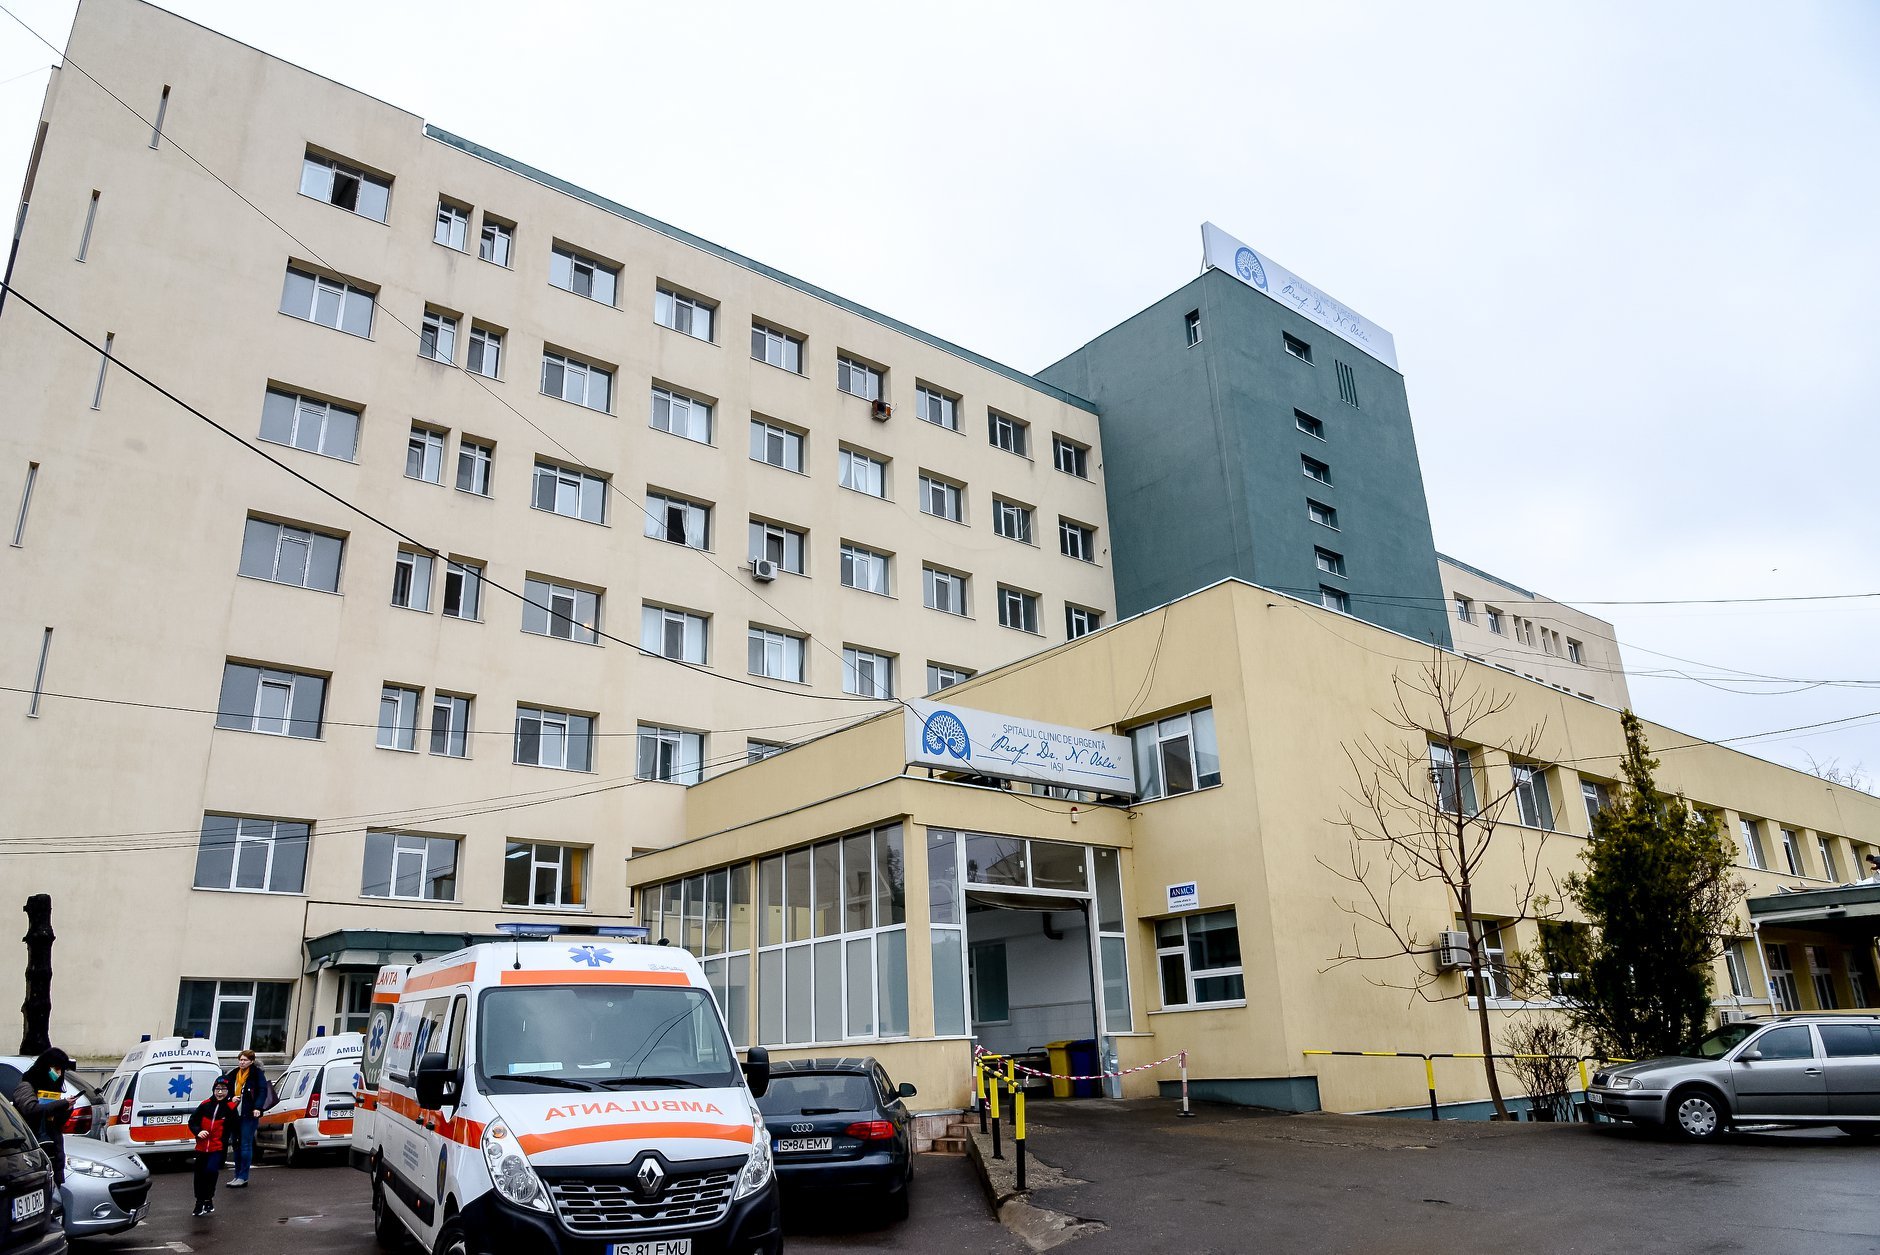  Restricții în spitalele ieșene: fără vizite, pachetele de mâncare sunt predate la poartă, pacienții nu au voie să iasă din spital